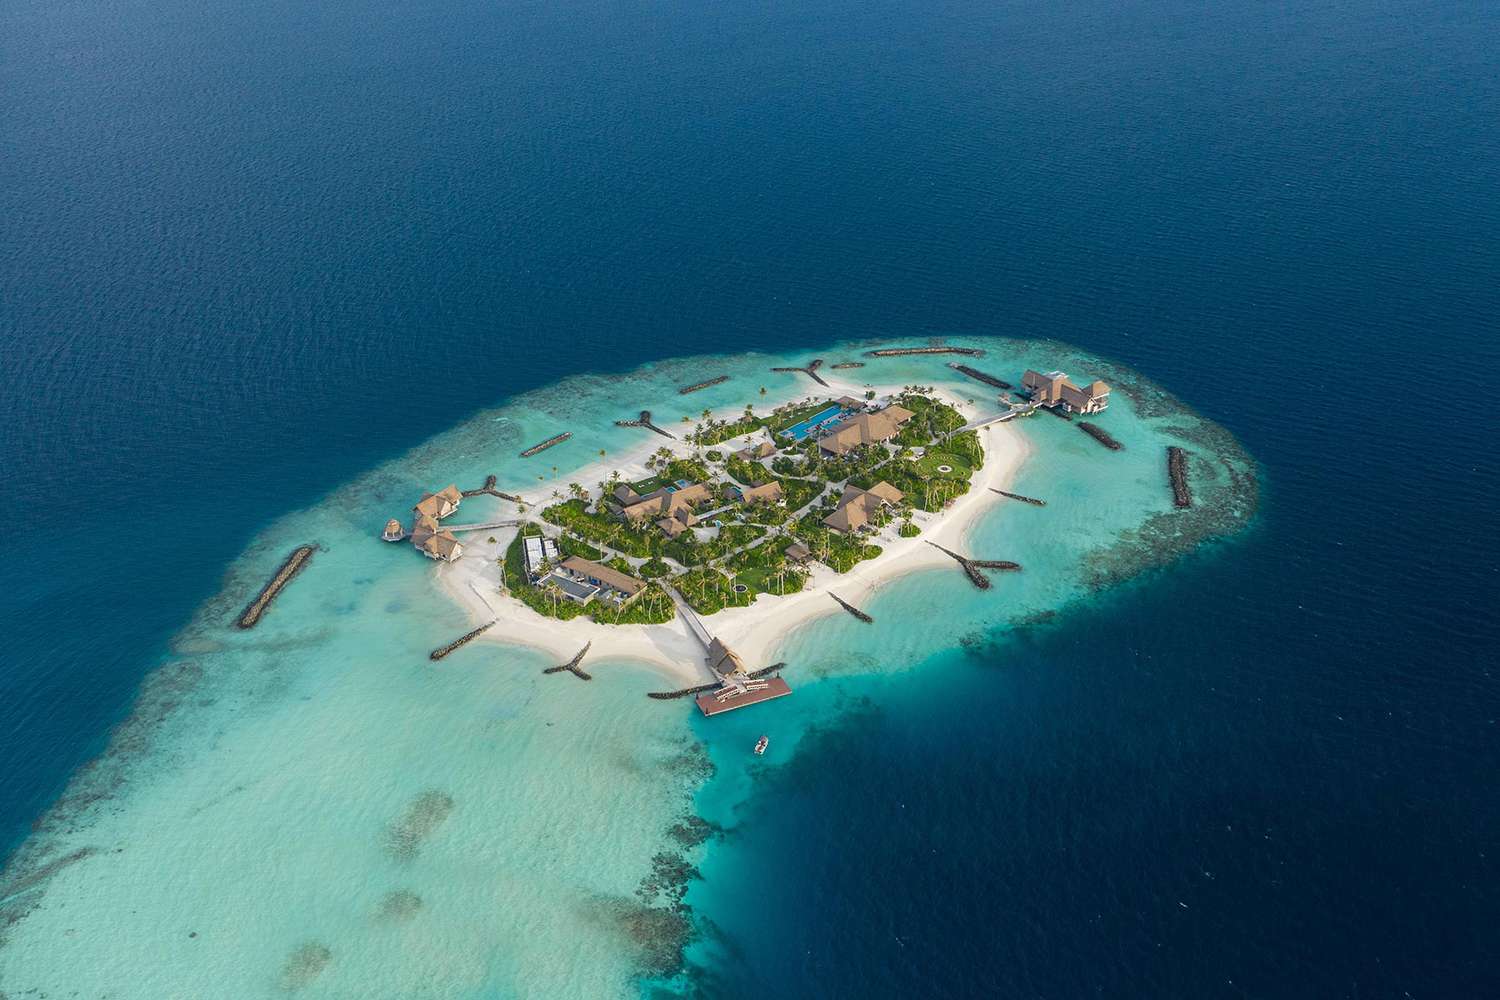 جزر المالديف Maldives island،جزر لشهر العسل رخيصة